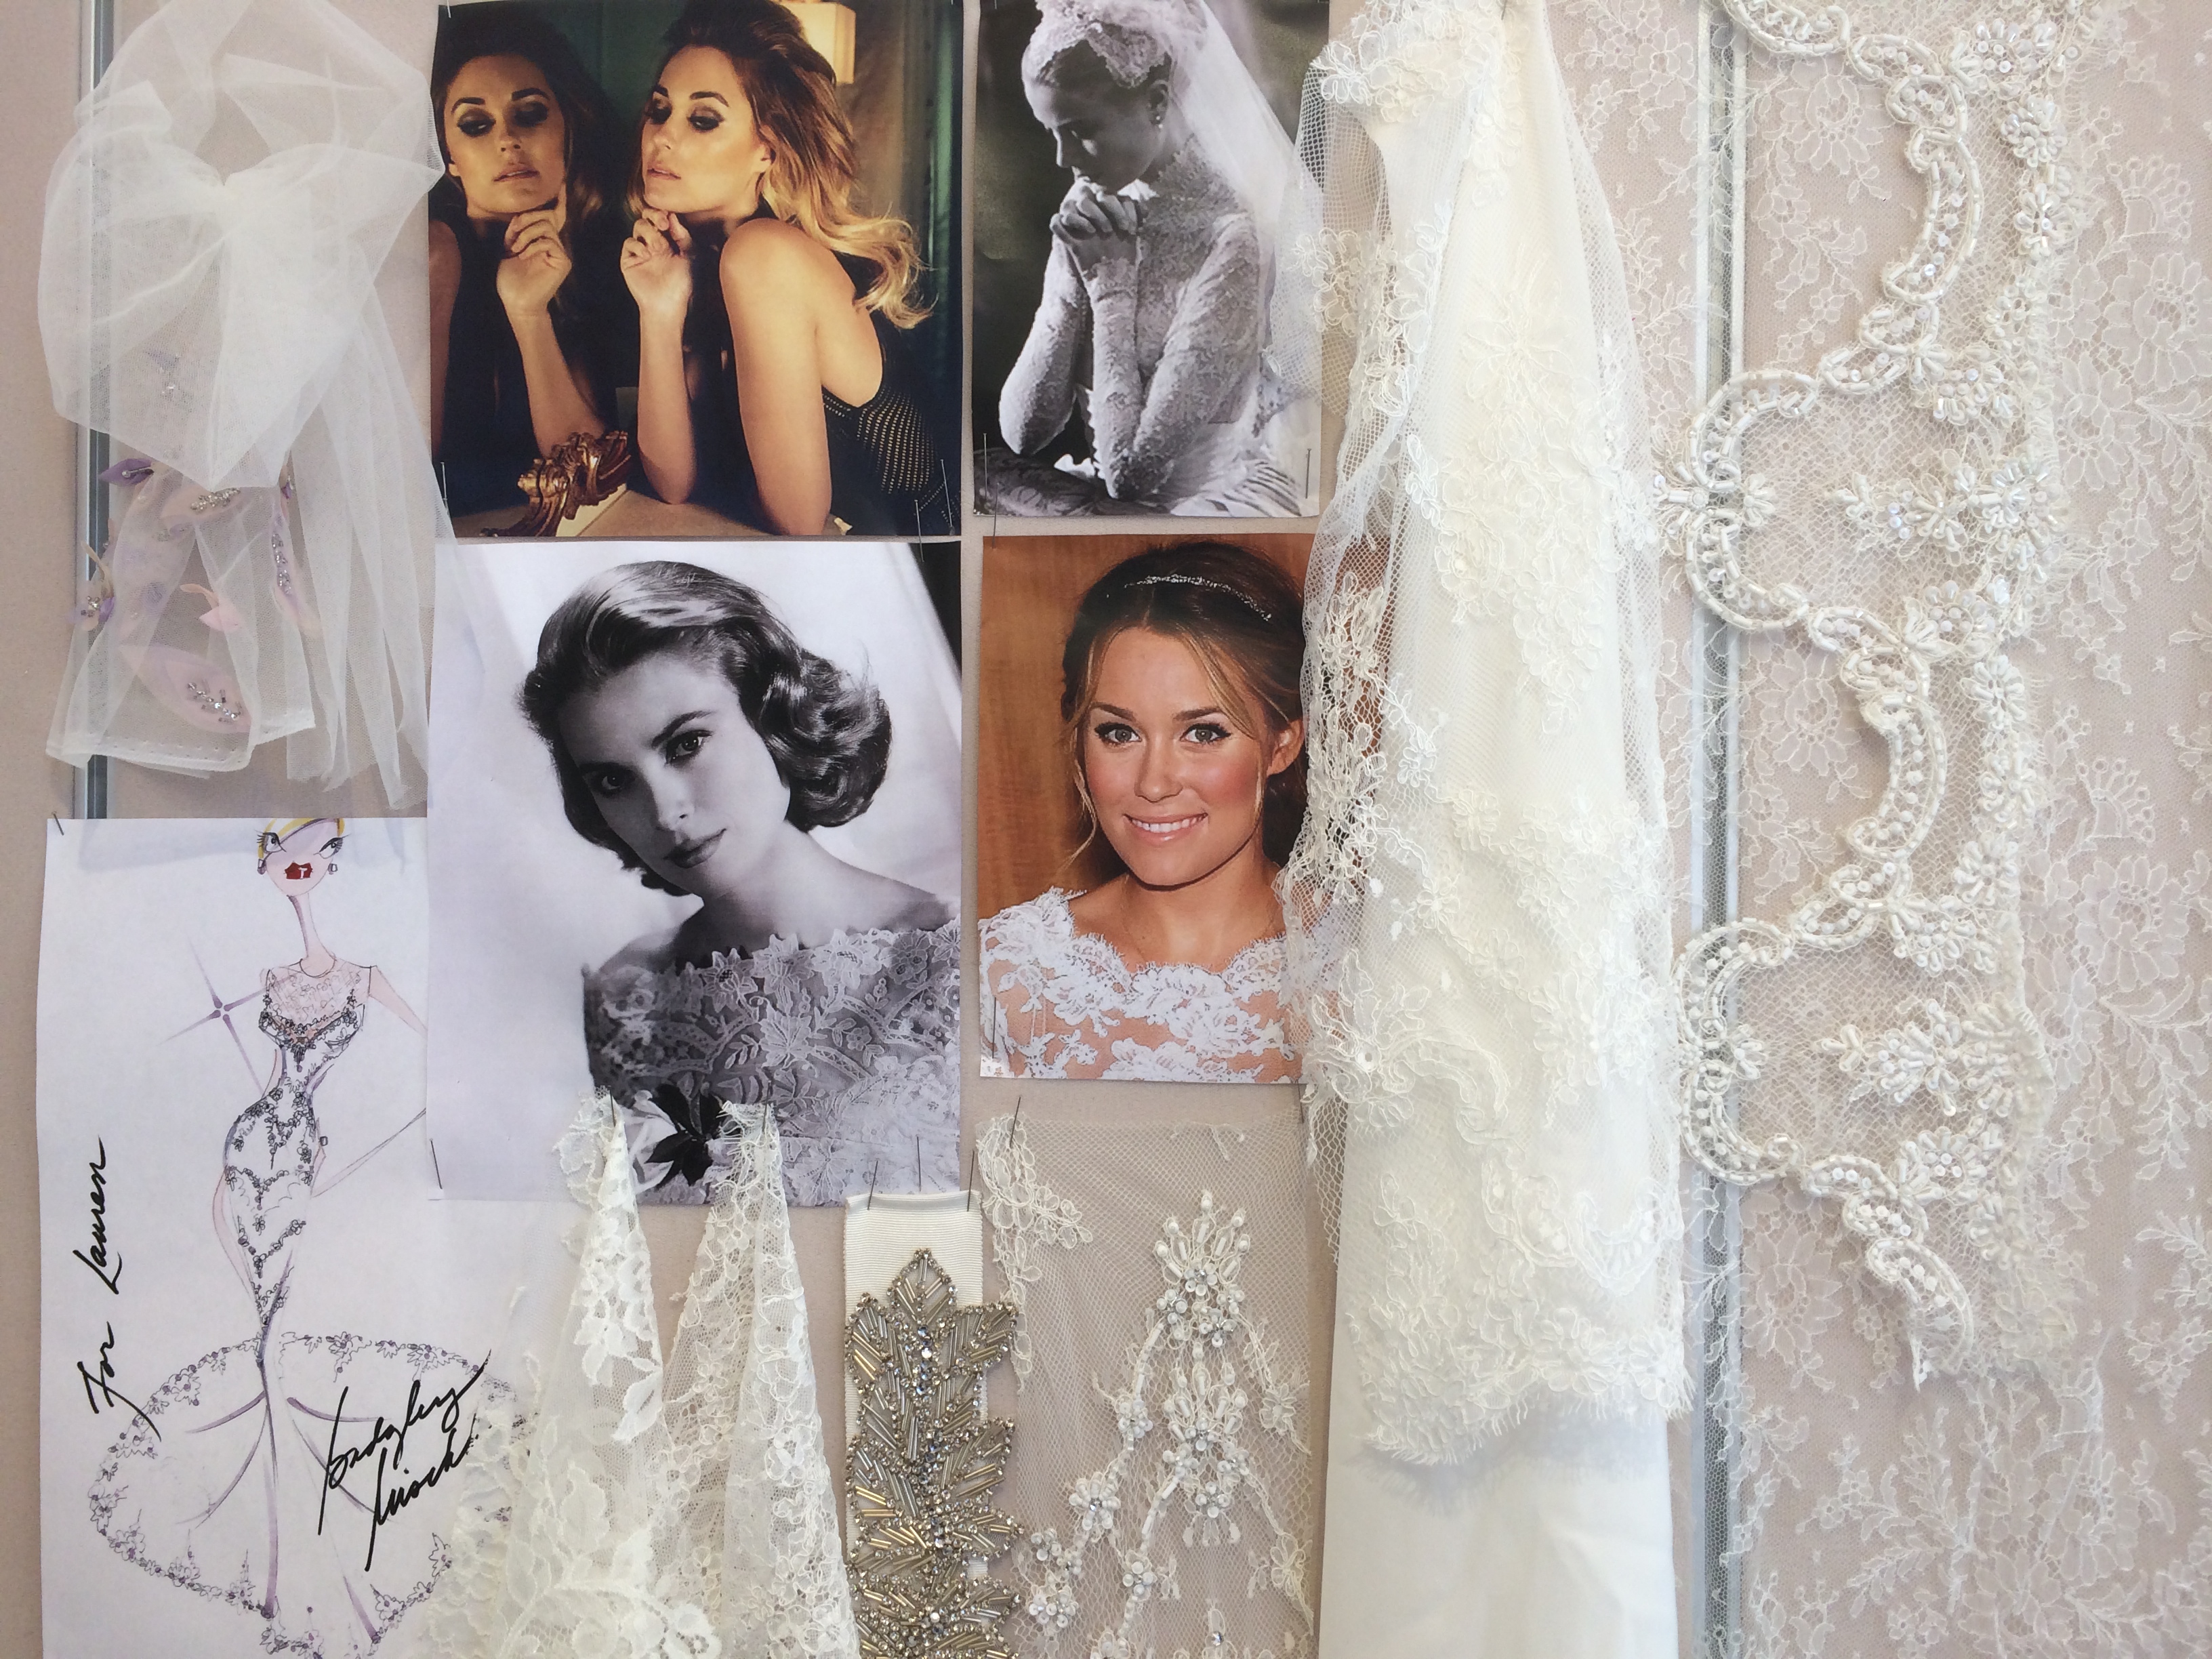 Lauren Conrad's Second Monique Lhuillier Wedding Dress: Get the Look